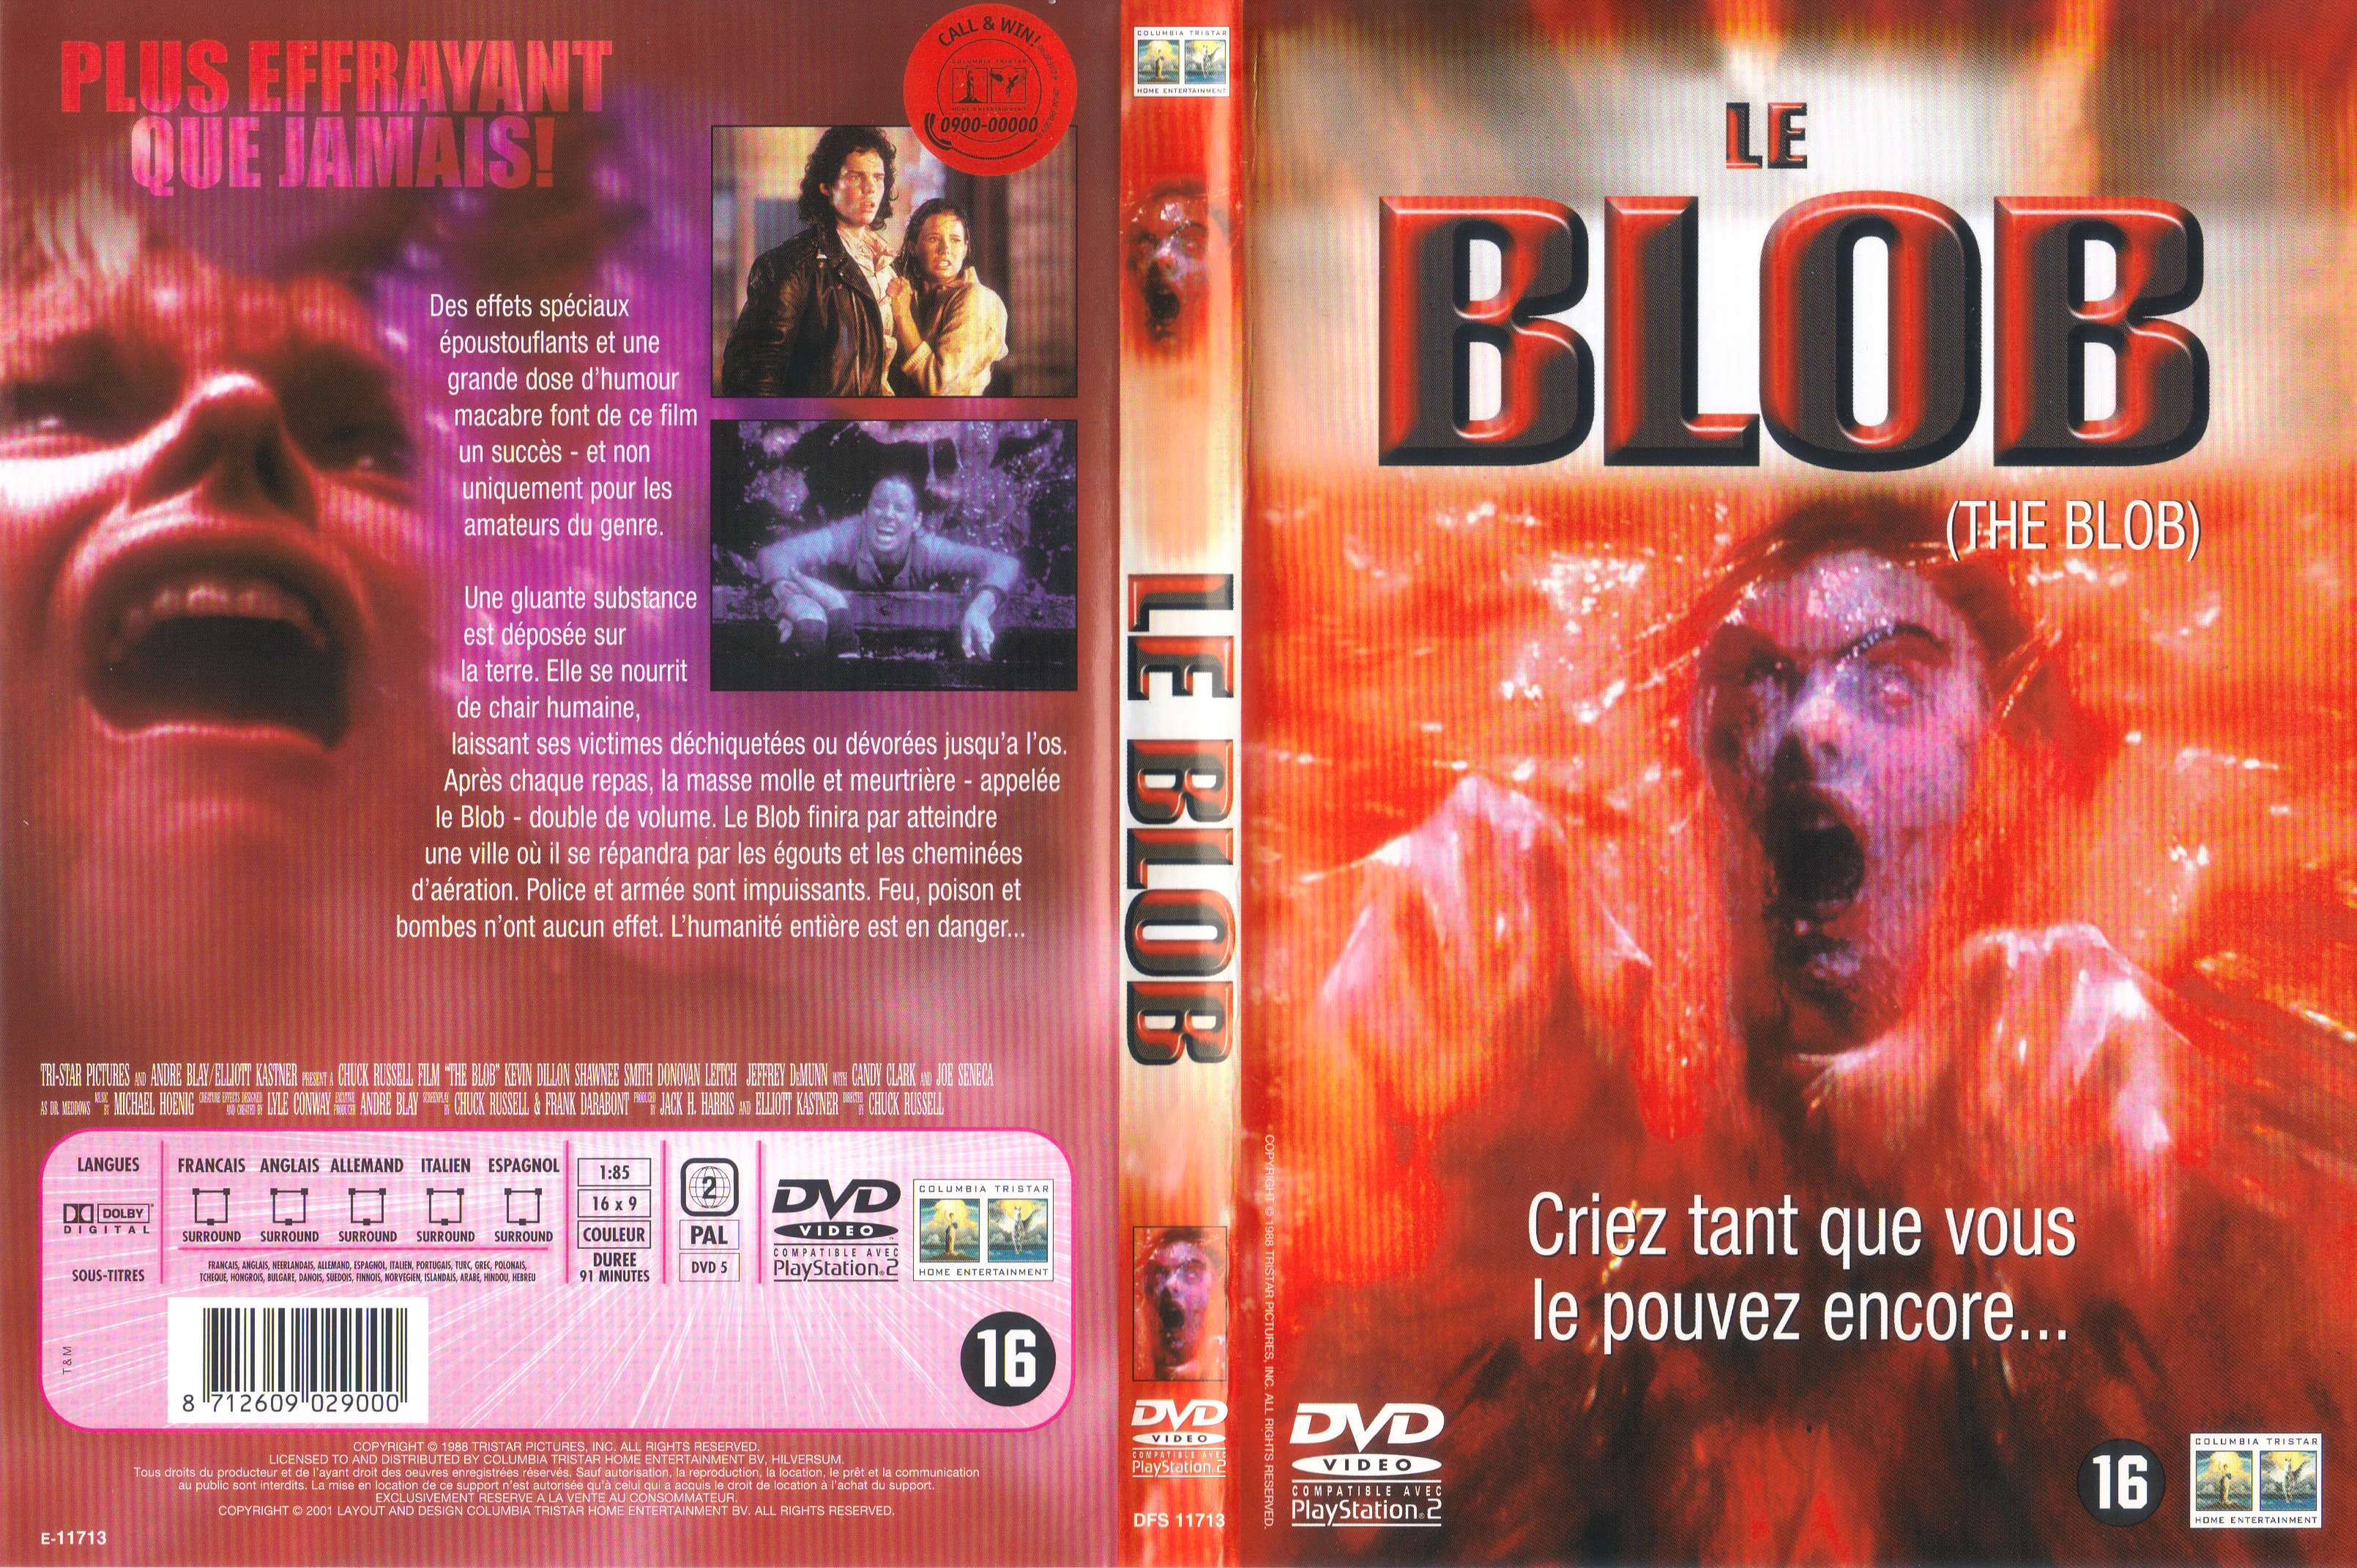 Jaquette DVD Le blob v3